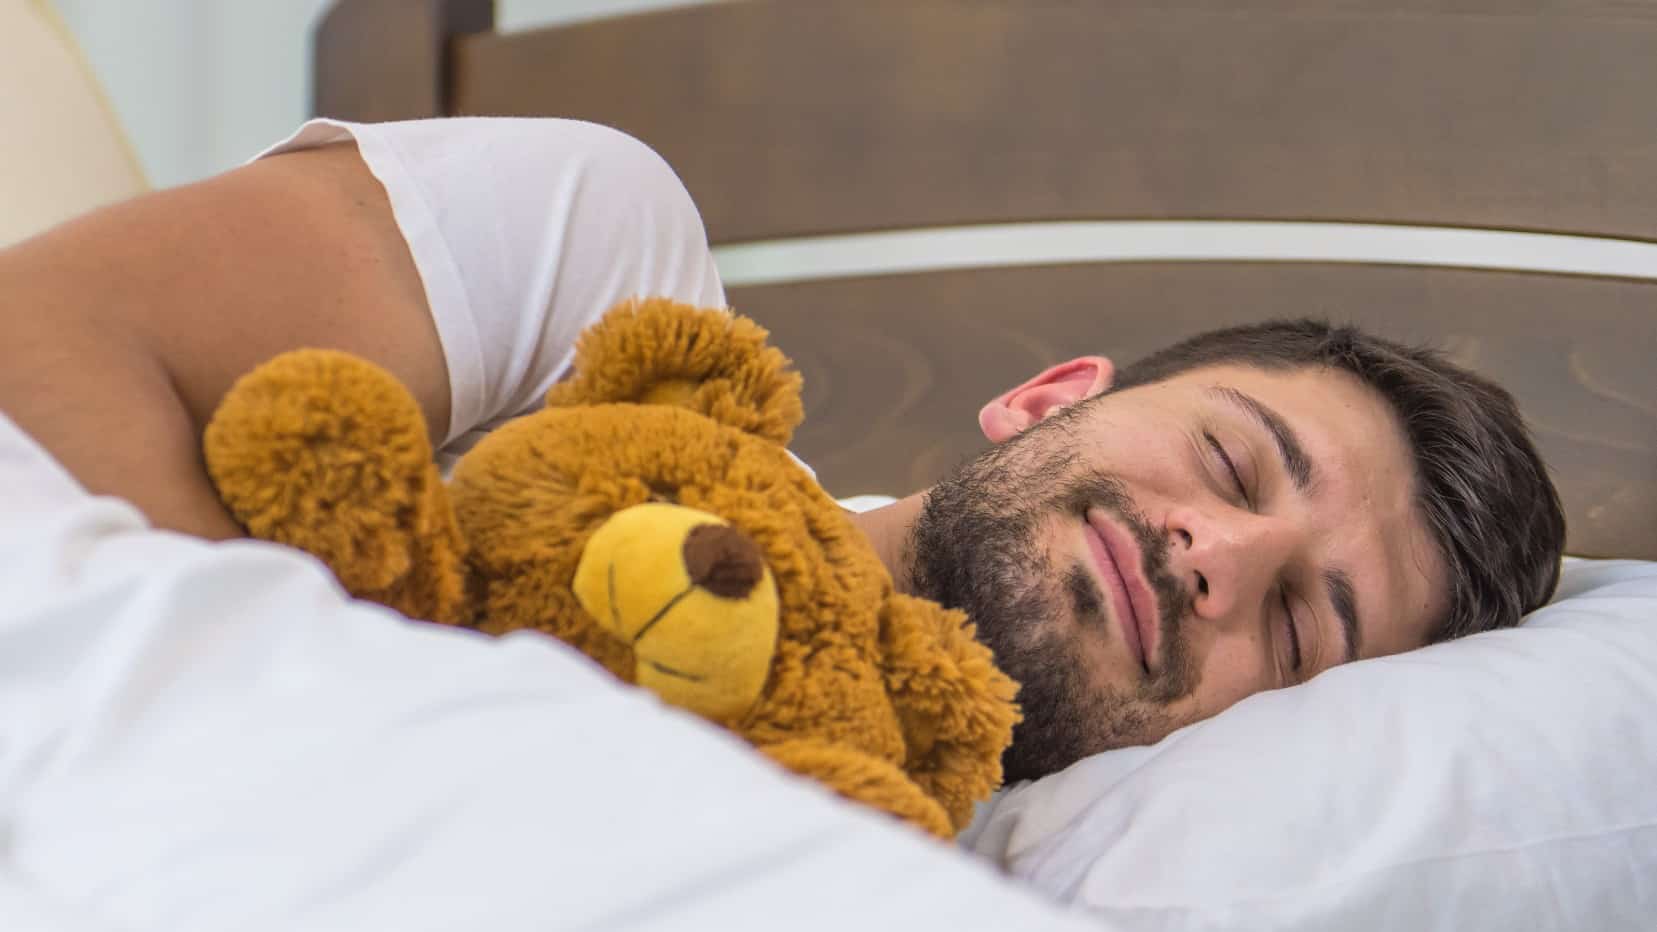 Man sleeps while holding a teddy bear.